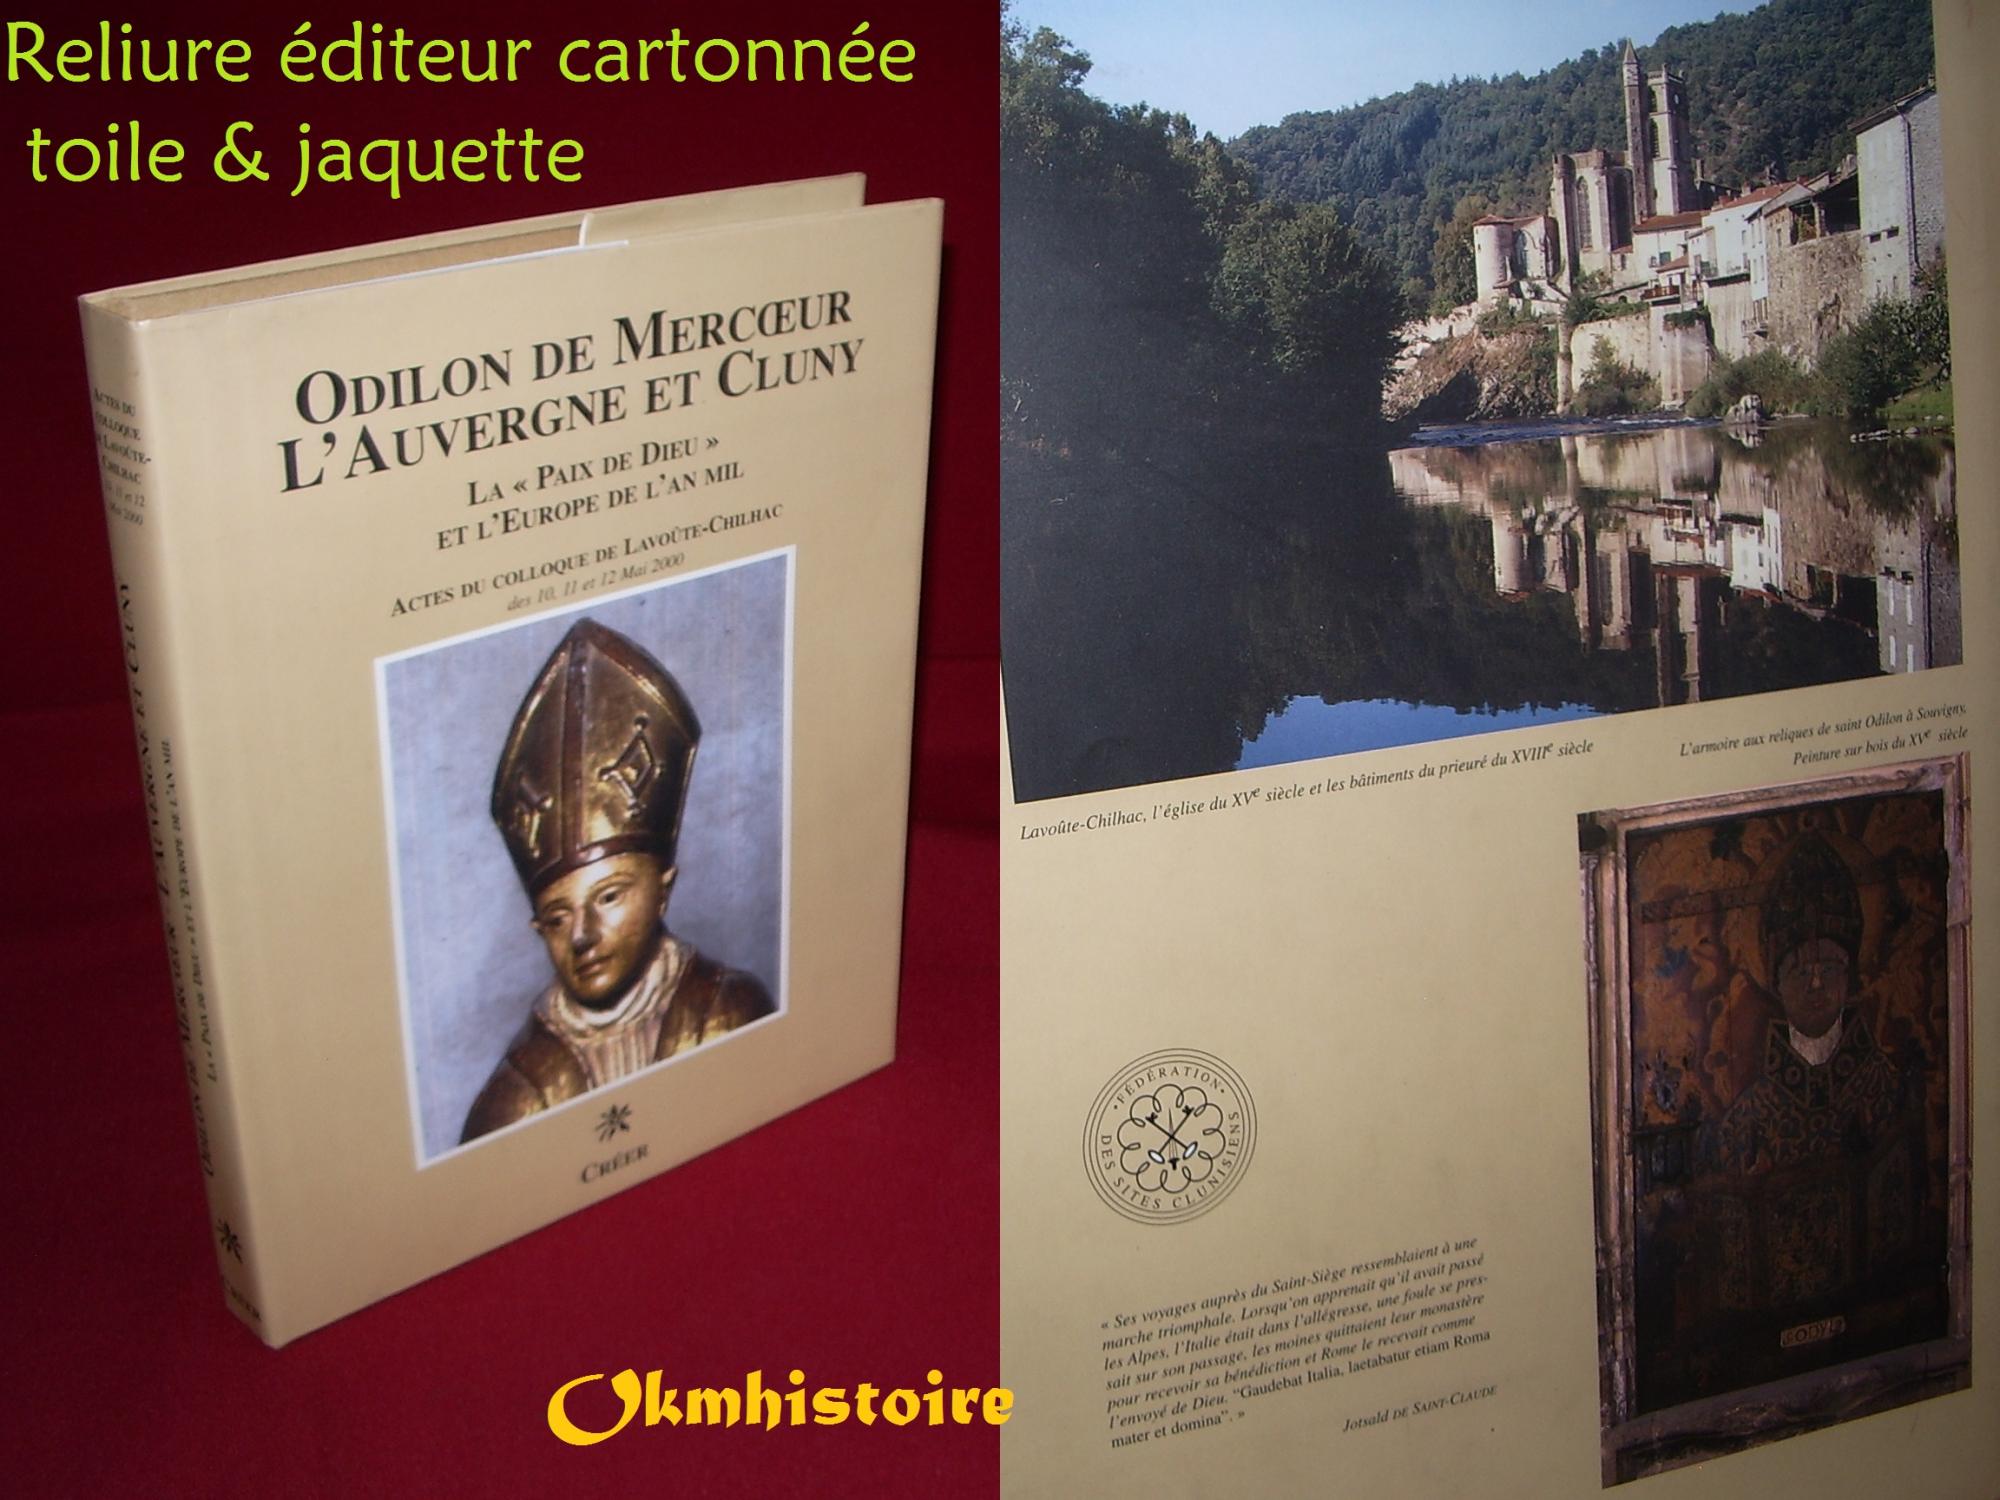 Odilon de Mercoeur l'Auvergne et Cluny, la paix de dieu et l'Europe de l'an mil -------- [ Actes du Colloque de Lavoûte-Chilhac des 10,11 et 12 Mai 2000 ] - Collectif